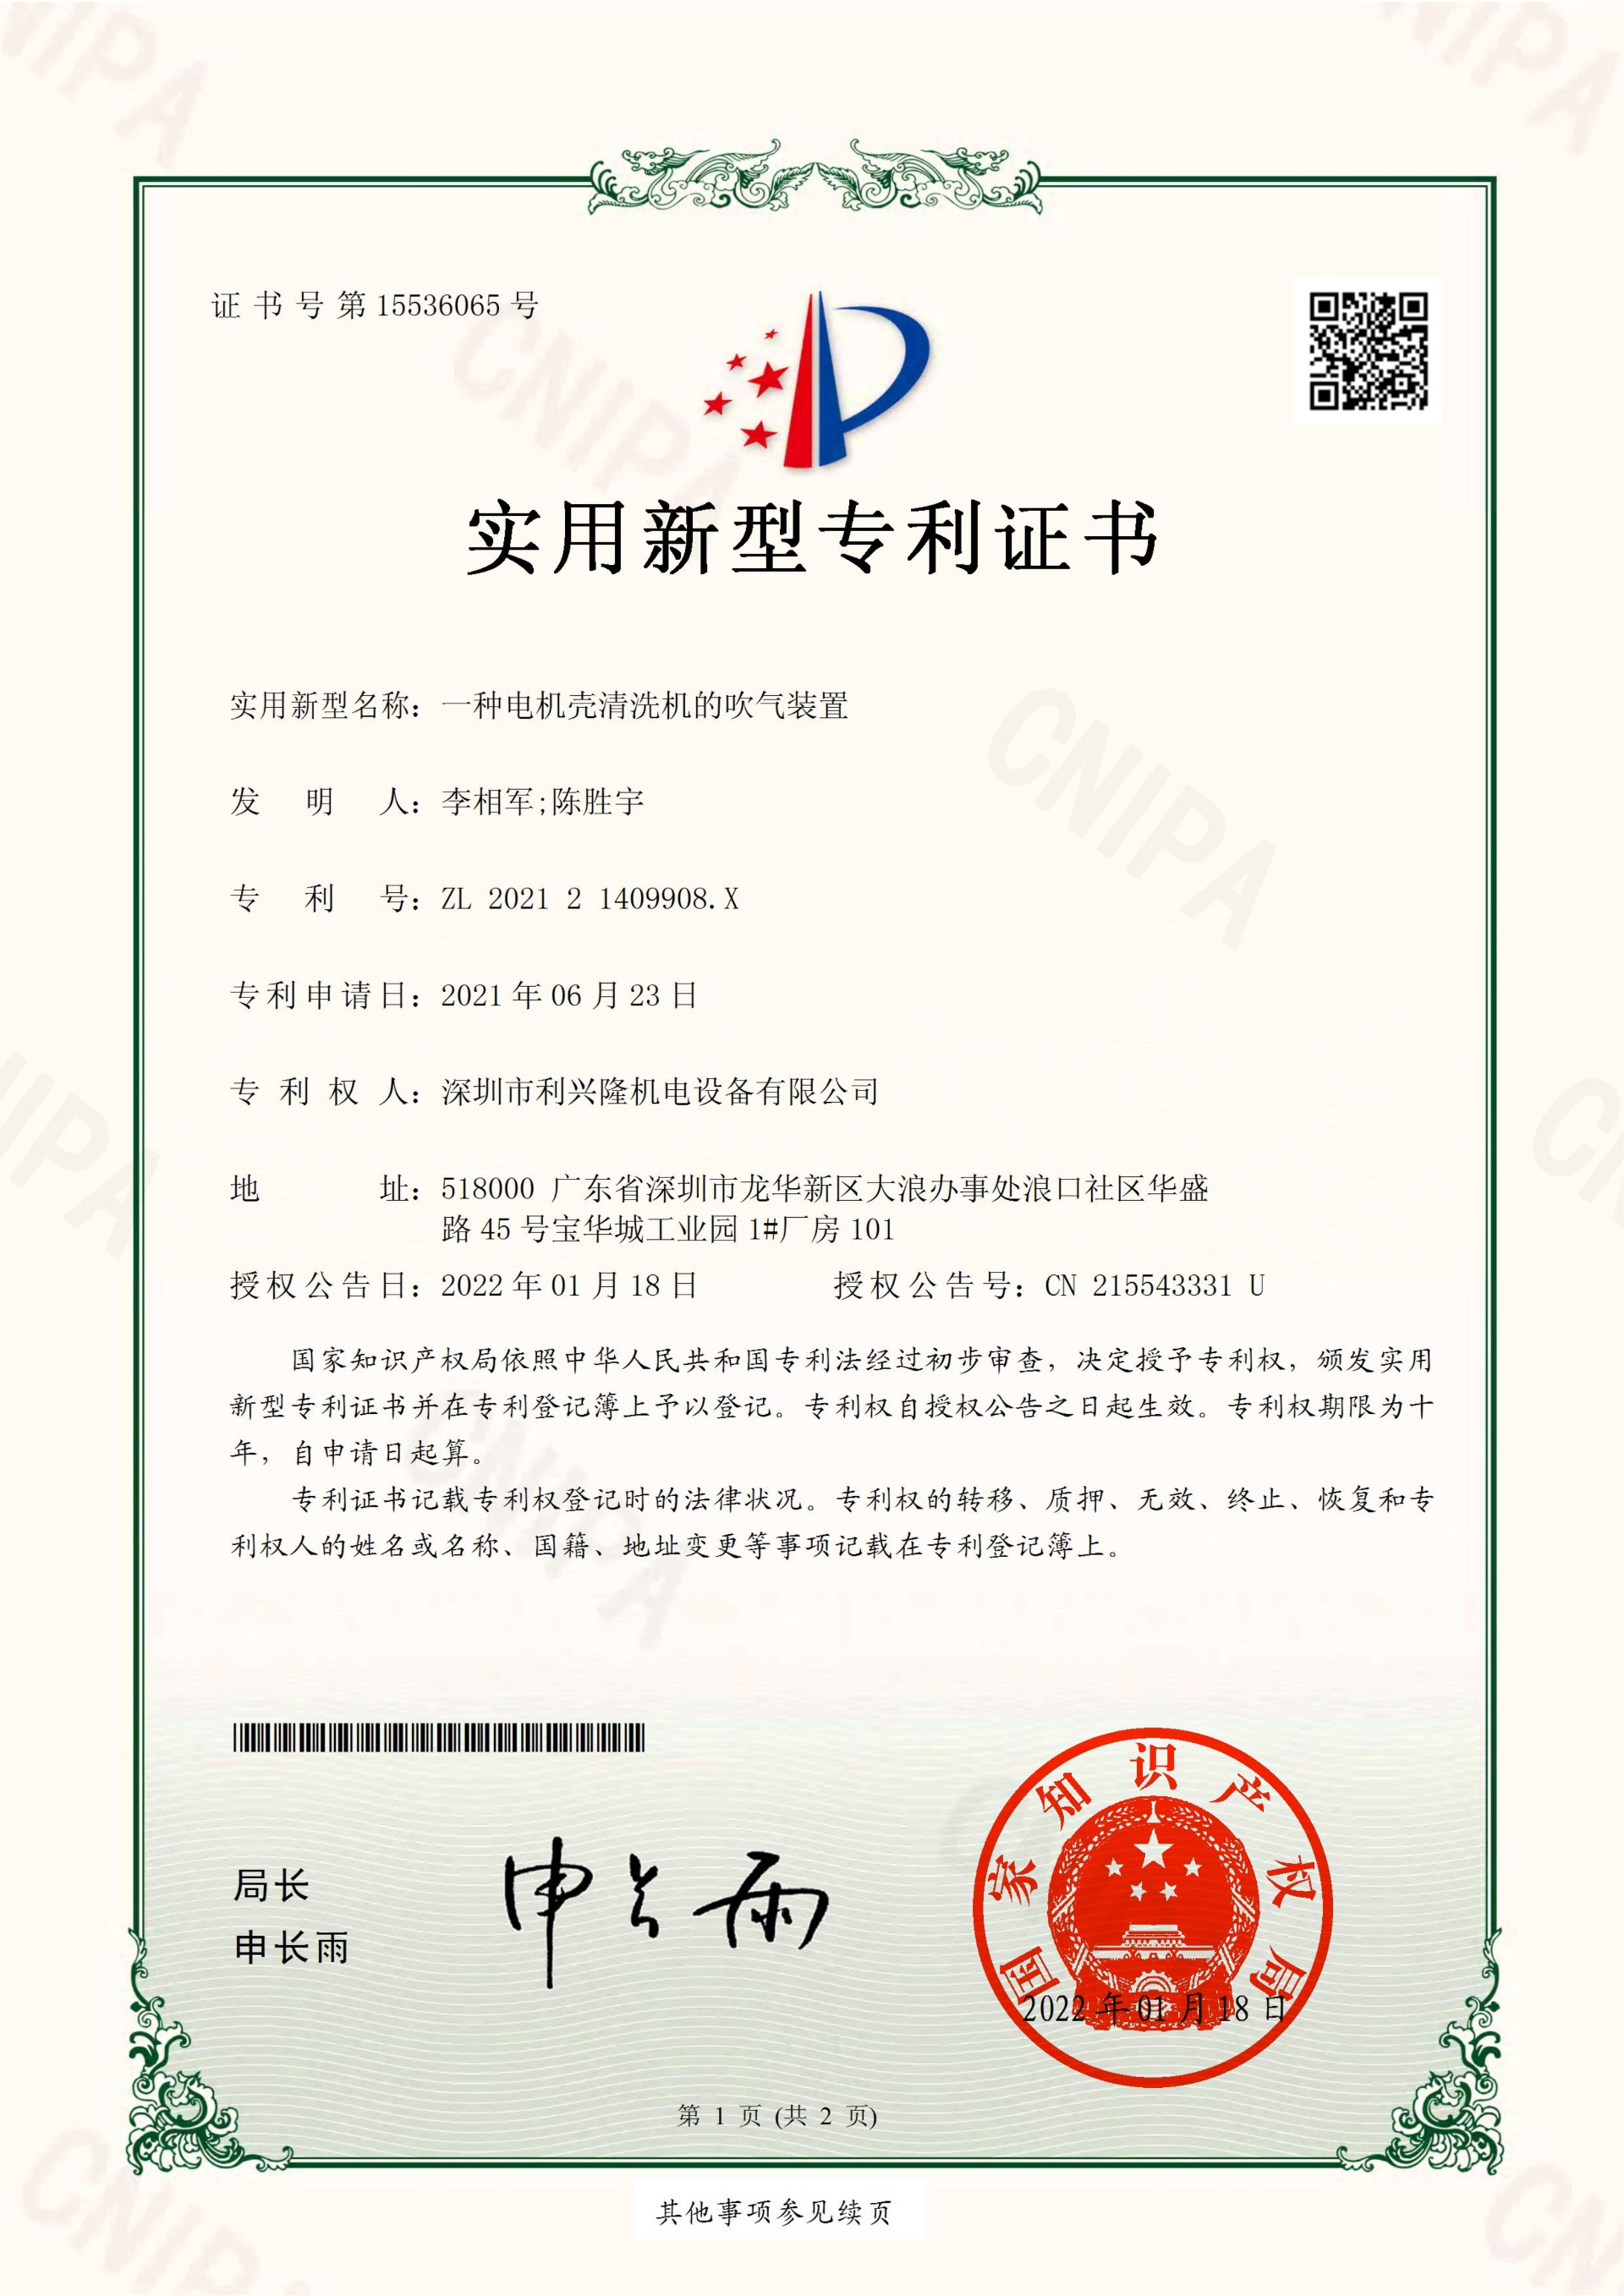 實用新型專利證書  一種電機殼清洗機的吹氣裝置-深圳市利興隆機電設備有限公司_00